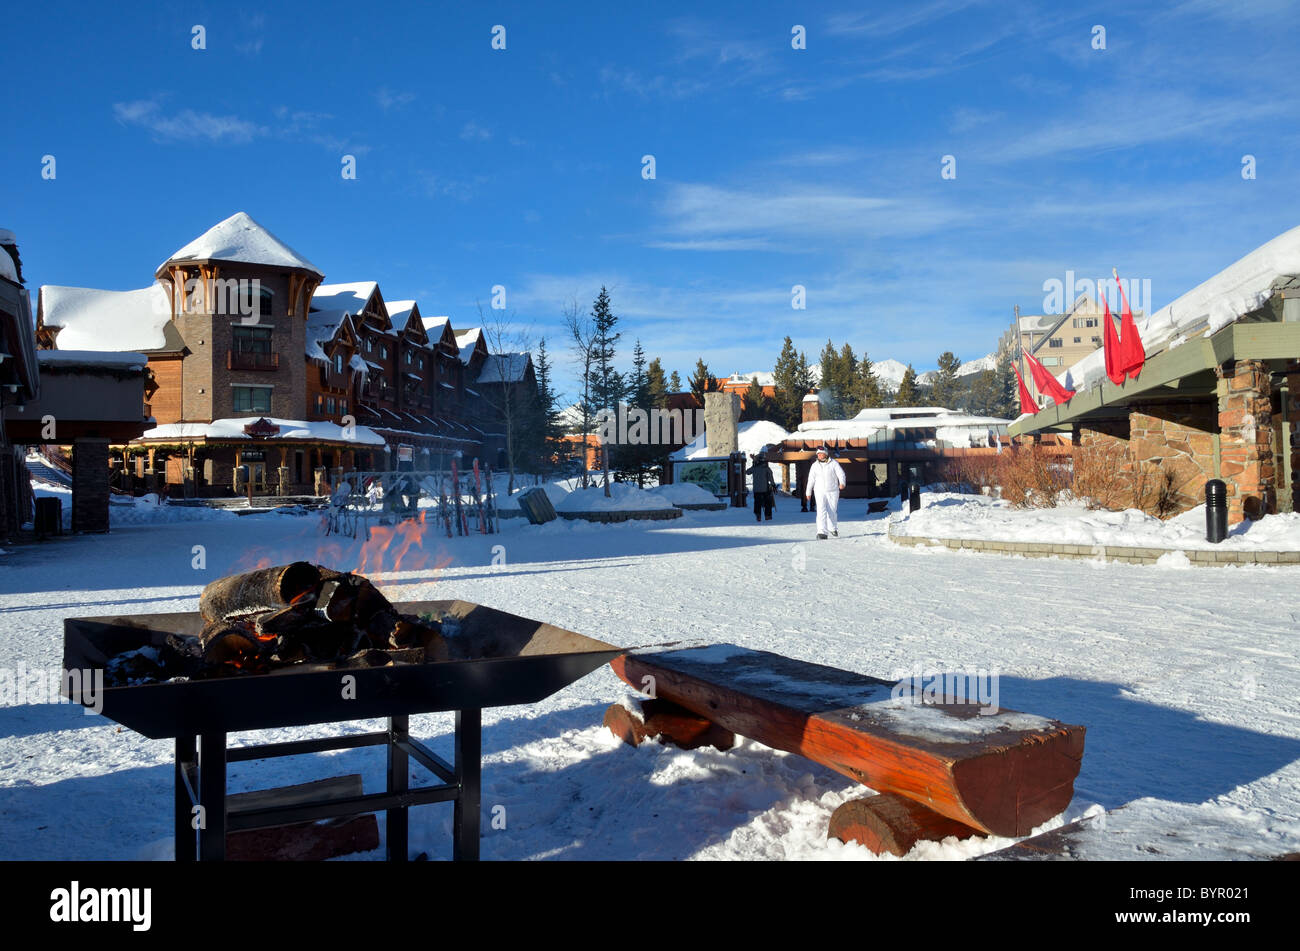 El centro del pueblo de estación de esquí de Big Sky, Montana, EE.UU. Foto de stock